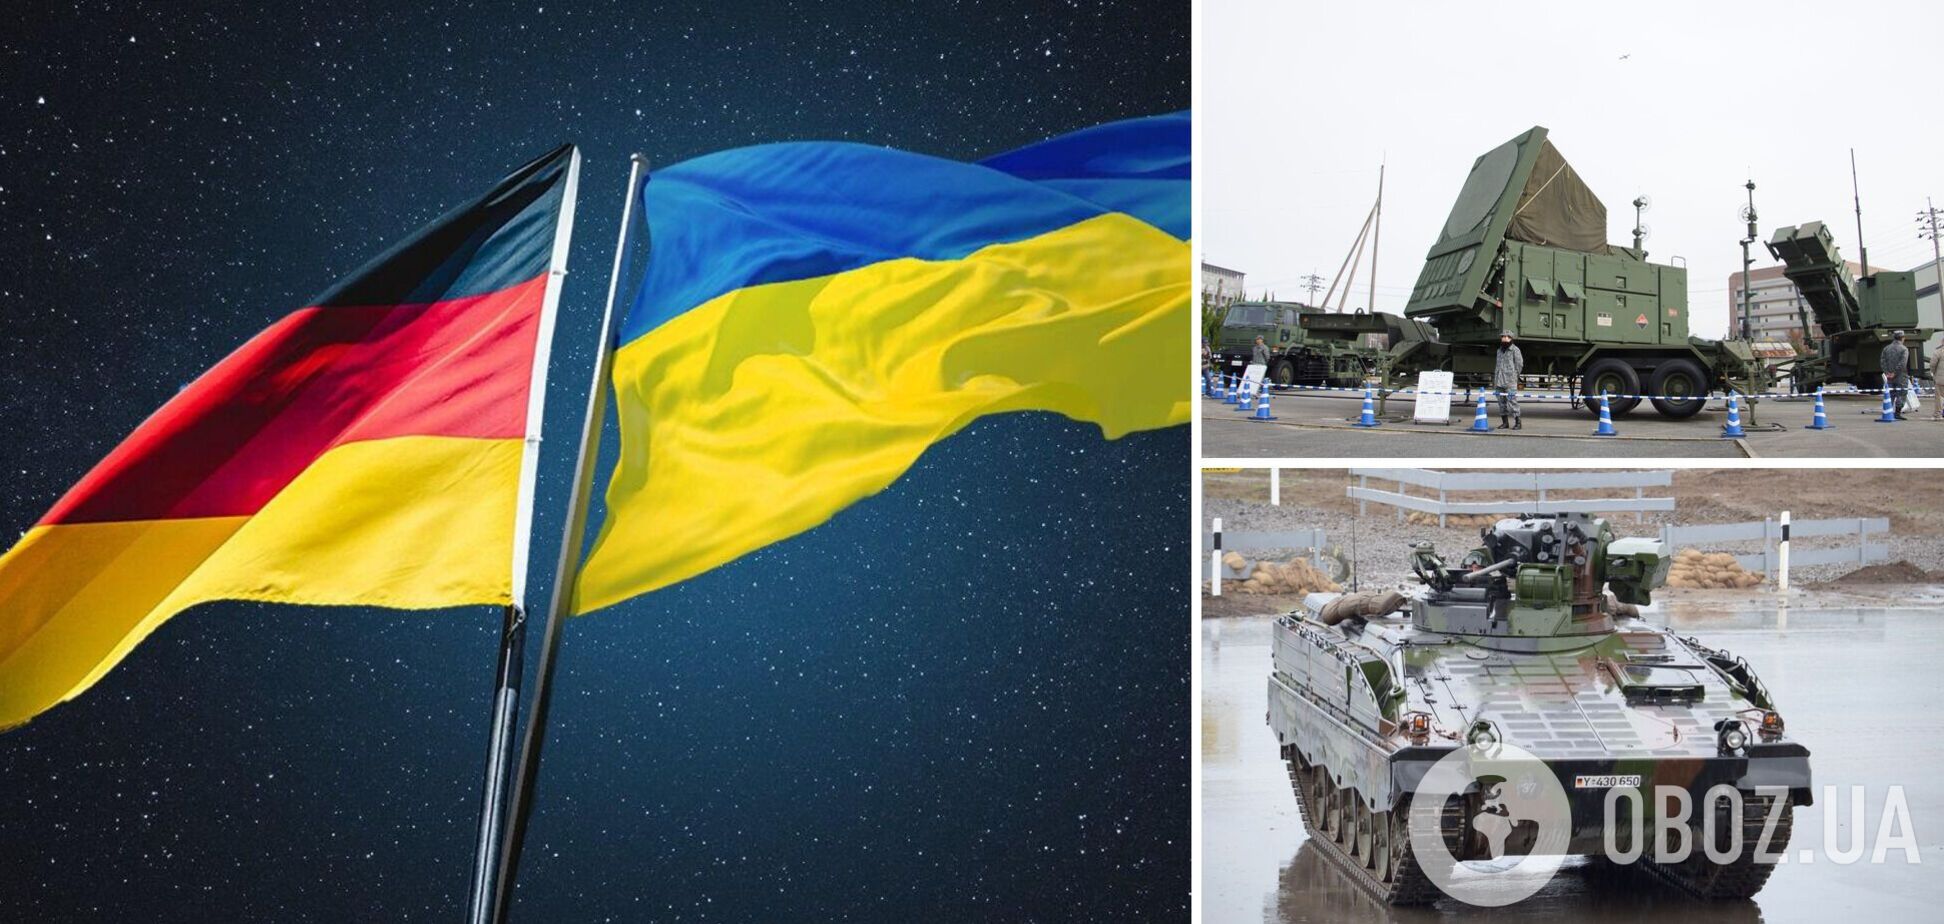 Германия передаст Украине системы ПВО Patriot и БМП Marder – заявление правительства